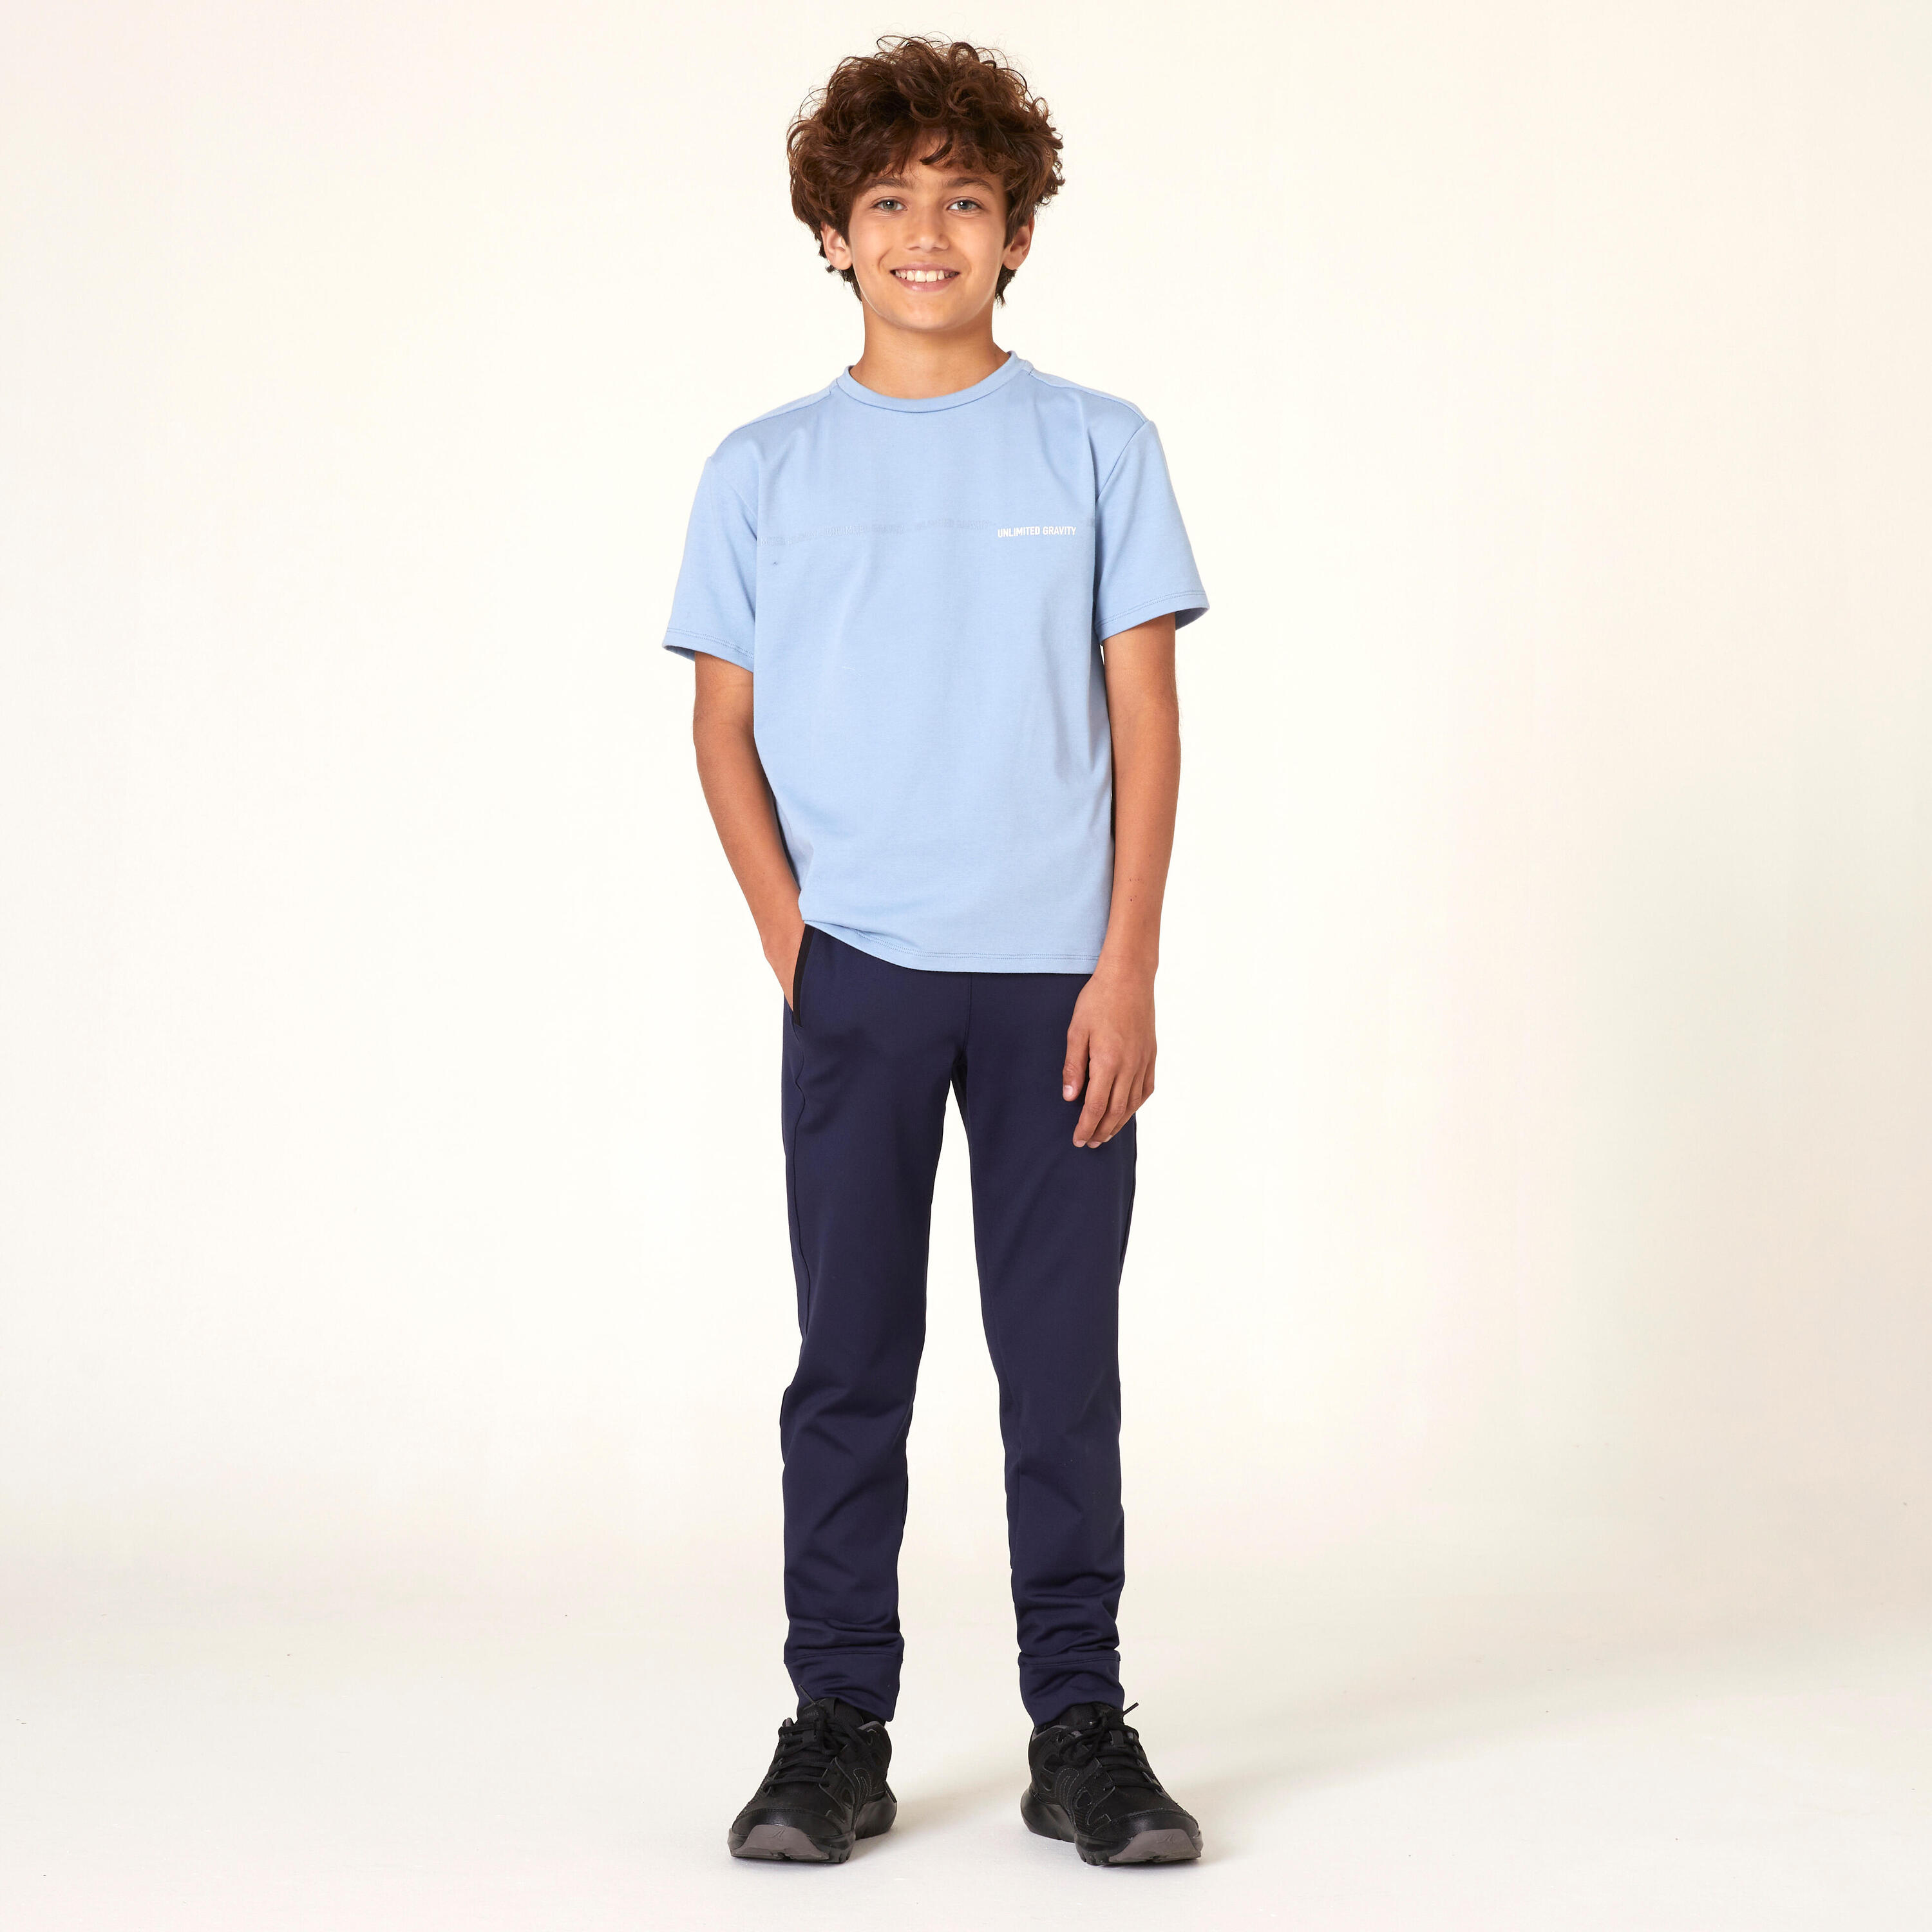 Kids' Breathable Cotton T-Shirt 500 - Blue Jeans 3/4